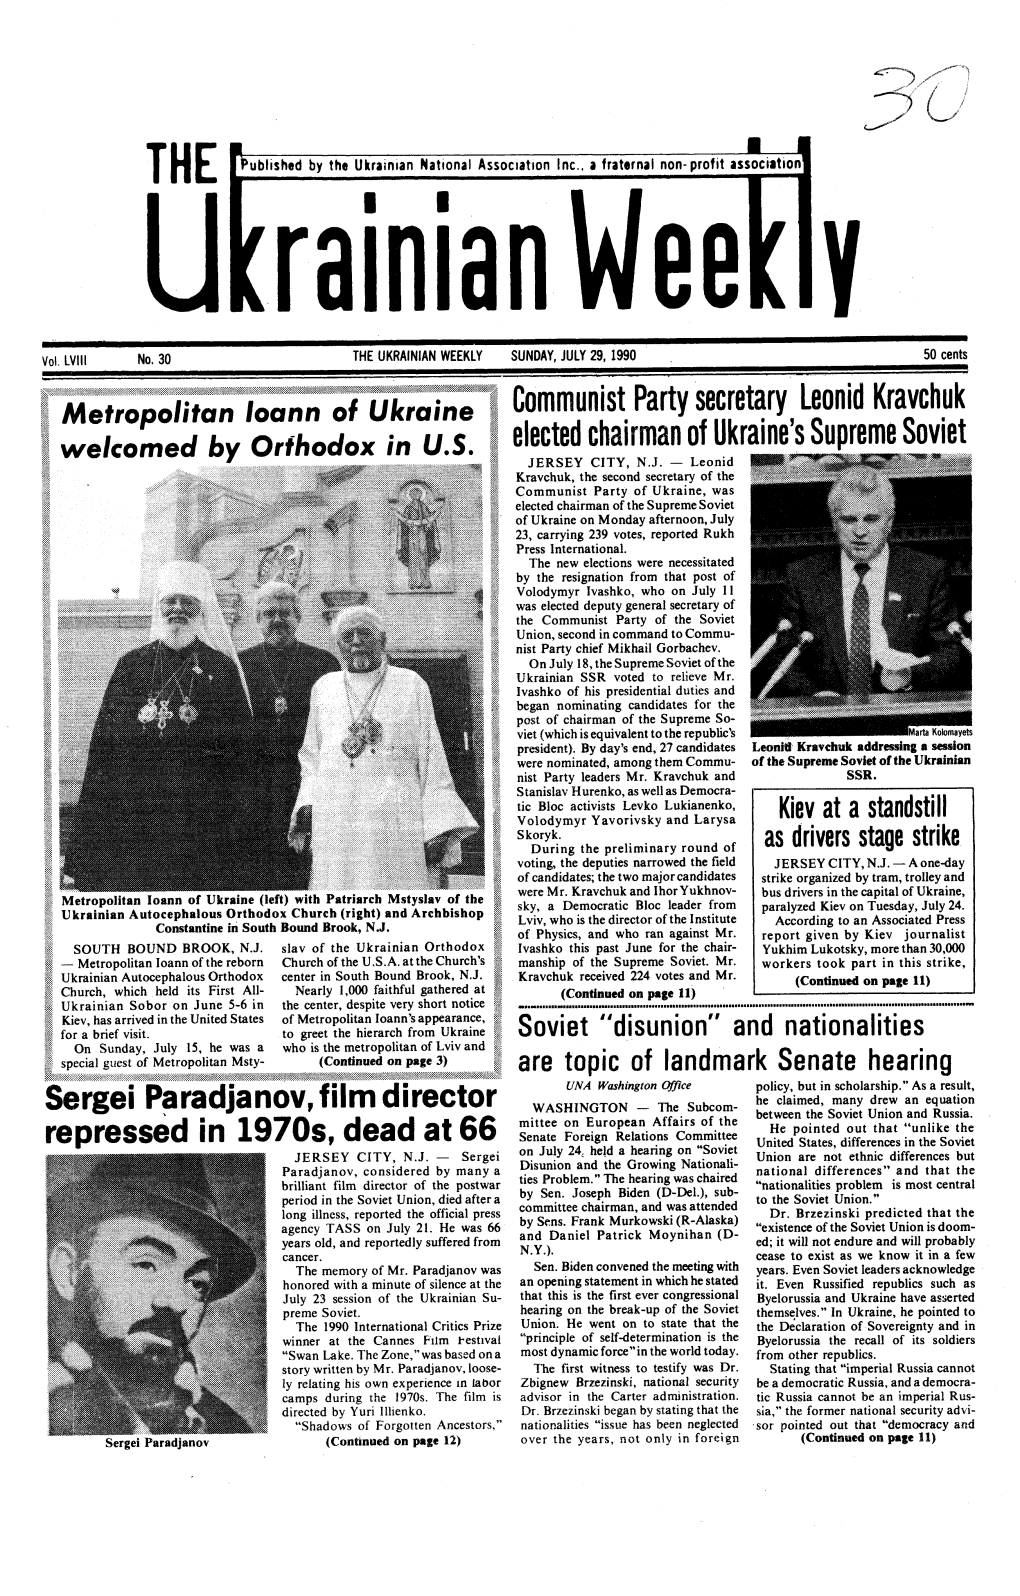 The Ukrainian Weekly 1990